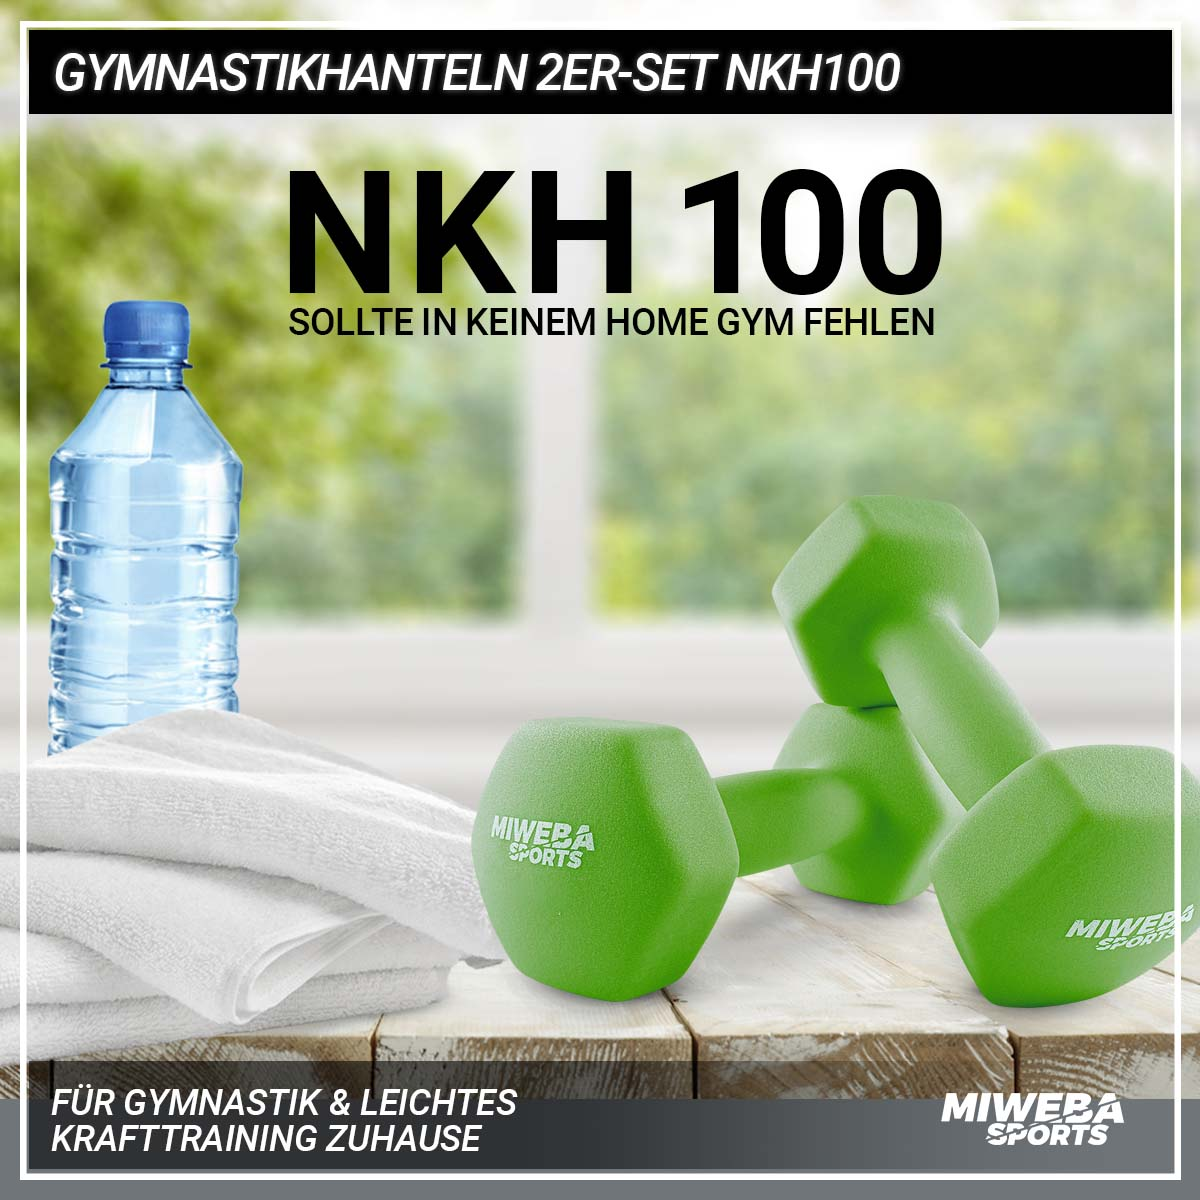 MIWEBA Gymnastikhanteln NKH100 2er Kurzhantel, Grün SPORTS Set